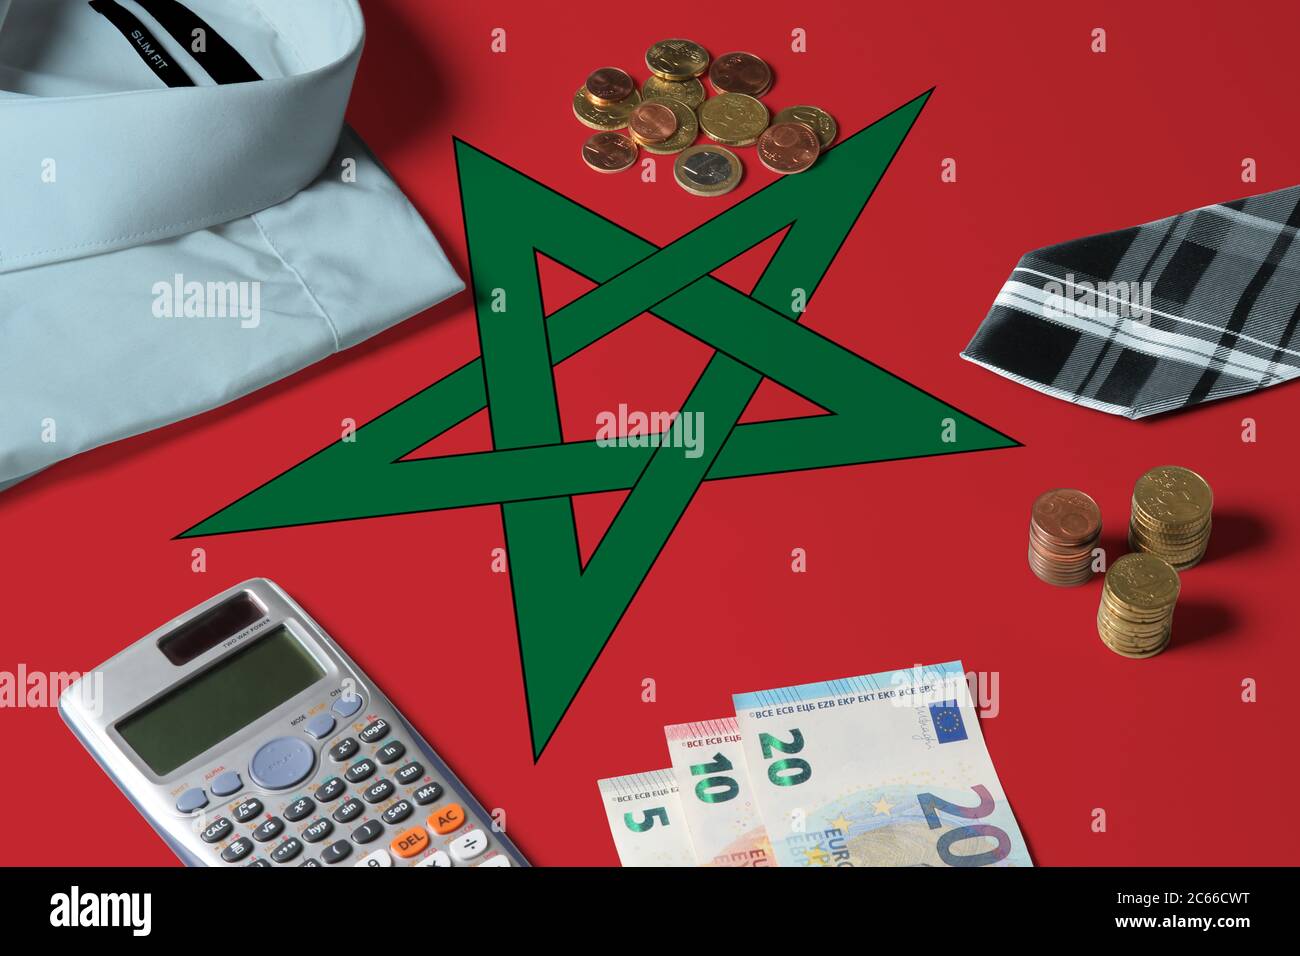 Marokko Flagge auf Minimal Money Concept Table. Münzen und Finanzobjekte auf Flaggenoberfläche. Thema der Volkswirtschaft. Stockfoto